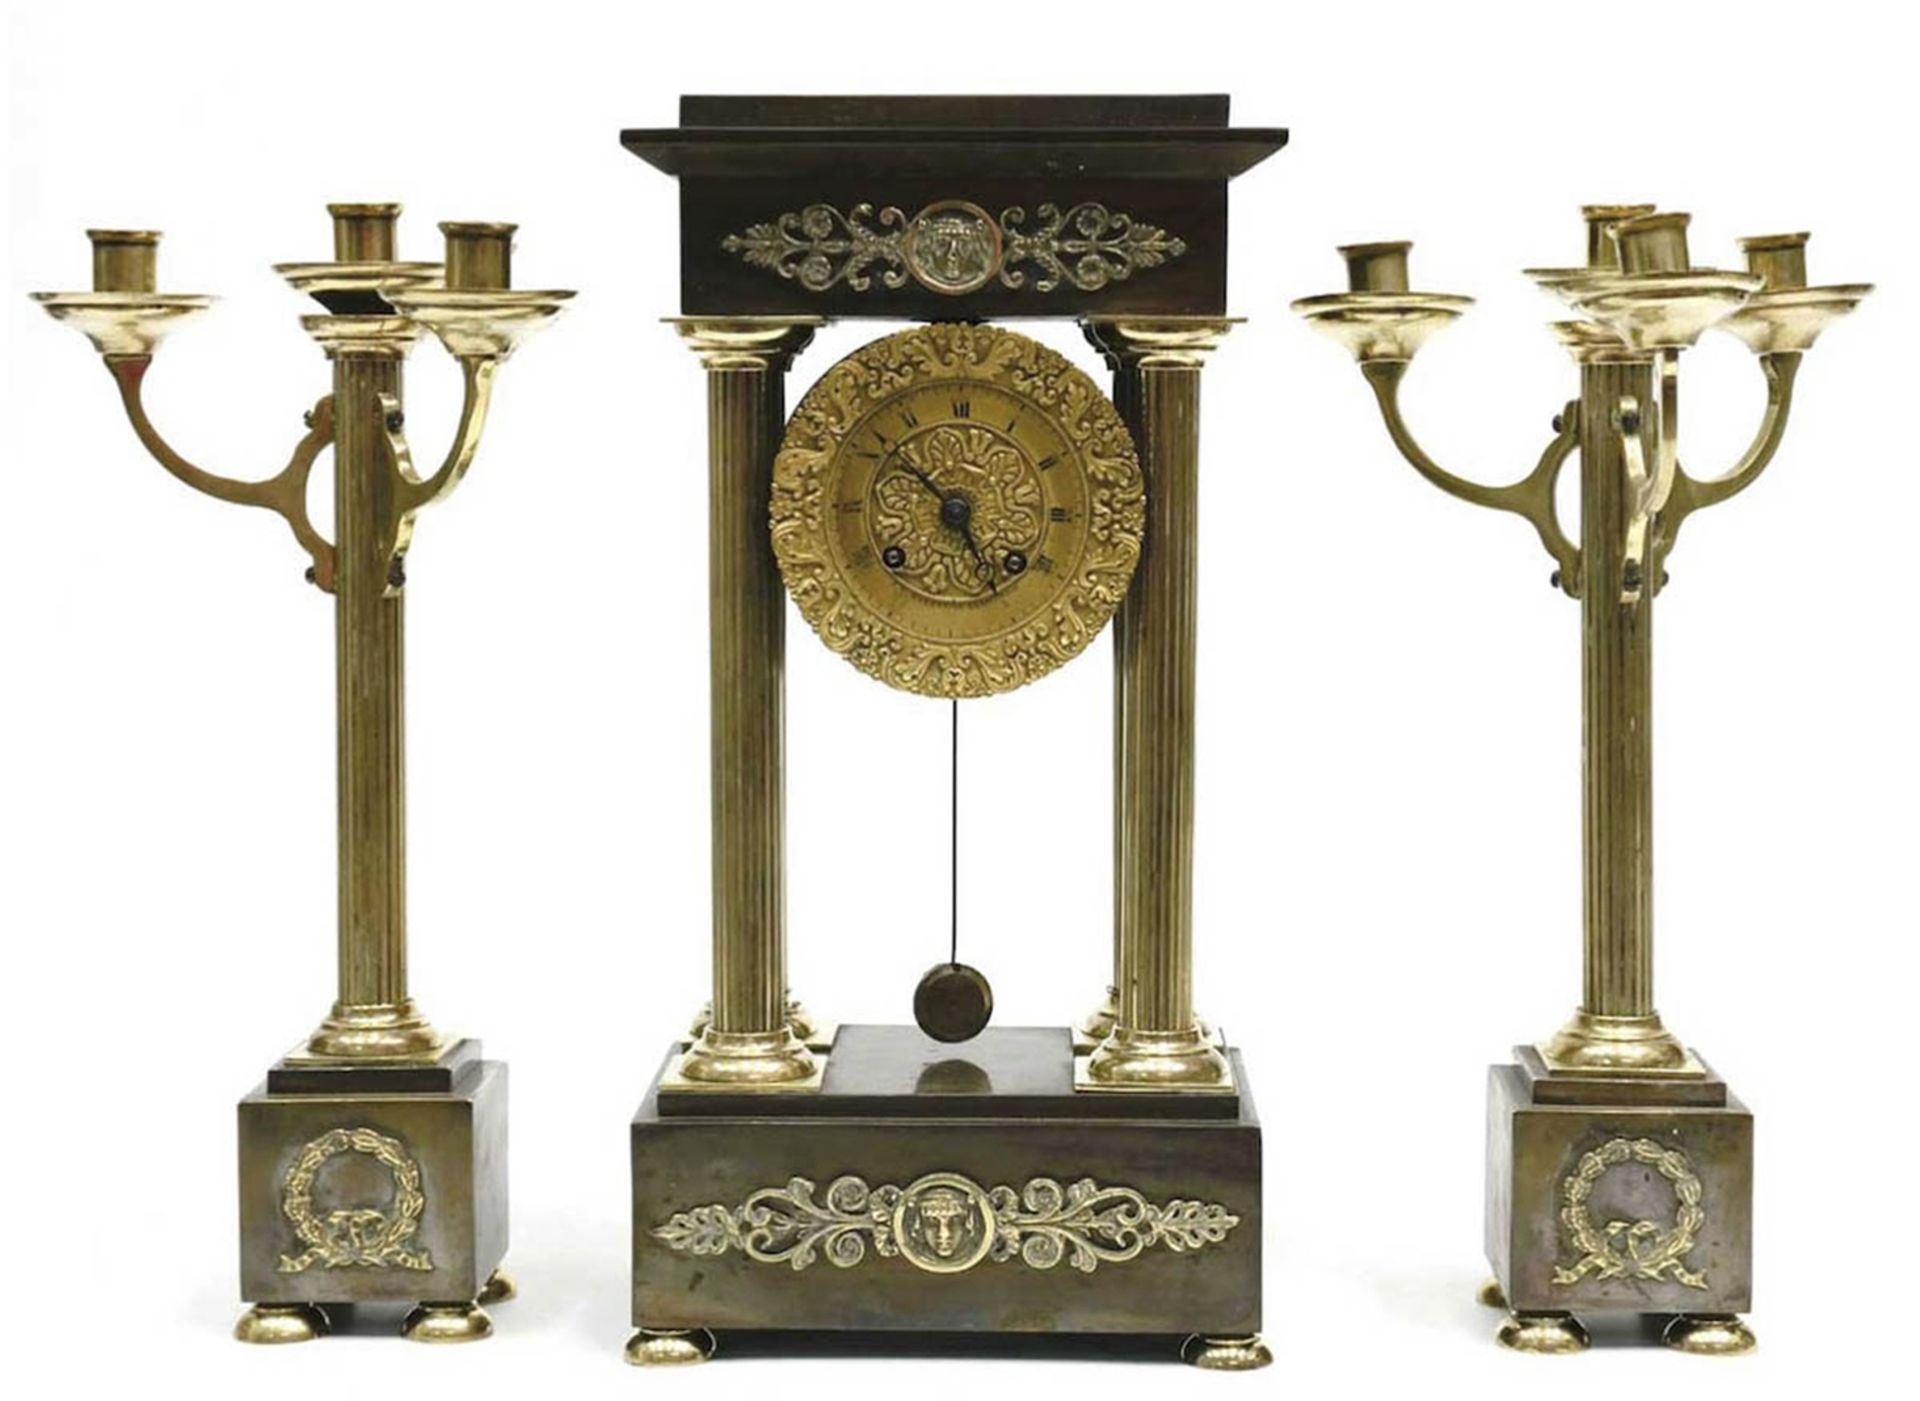 Uhrengarnitur, um 1820, 3-teilig, Messinggehäuse, kannelierte Vollsäulen, Bronzeapplikationen, sign